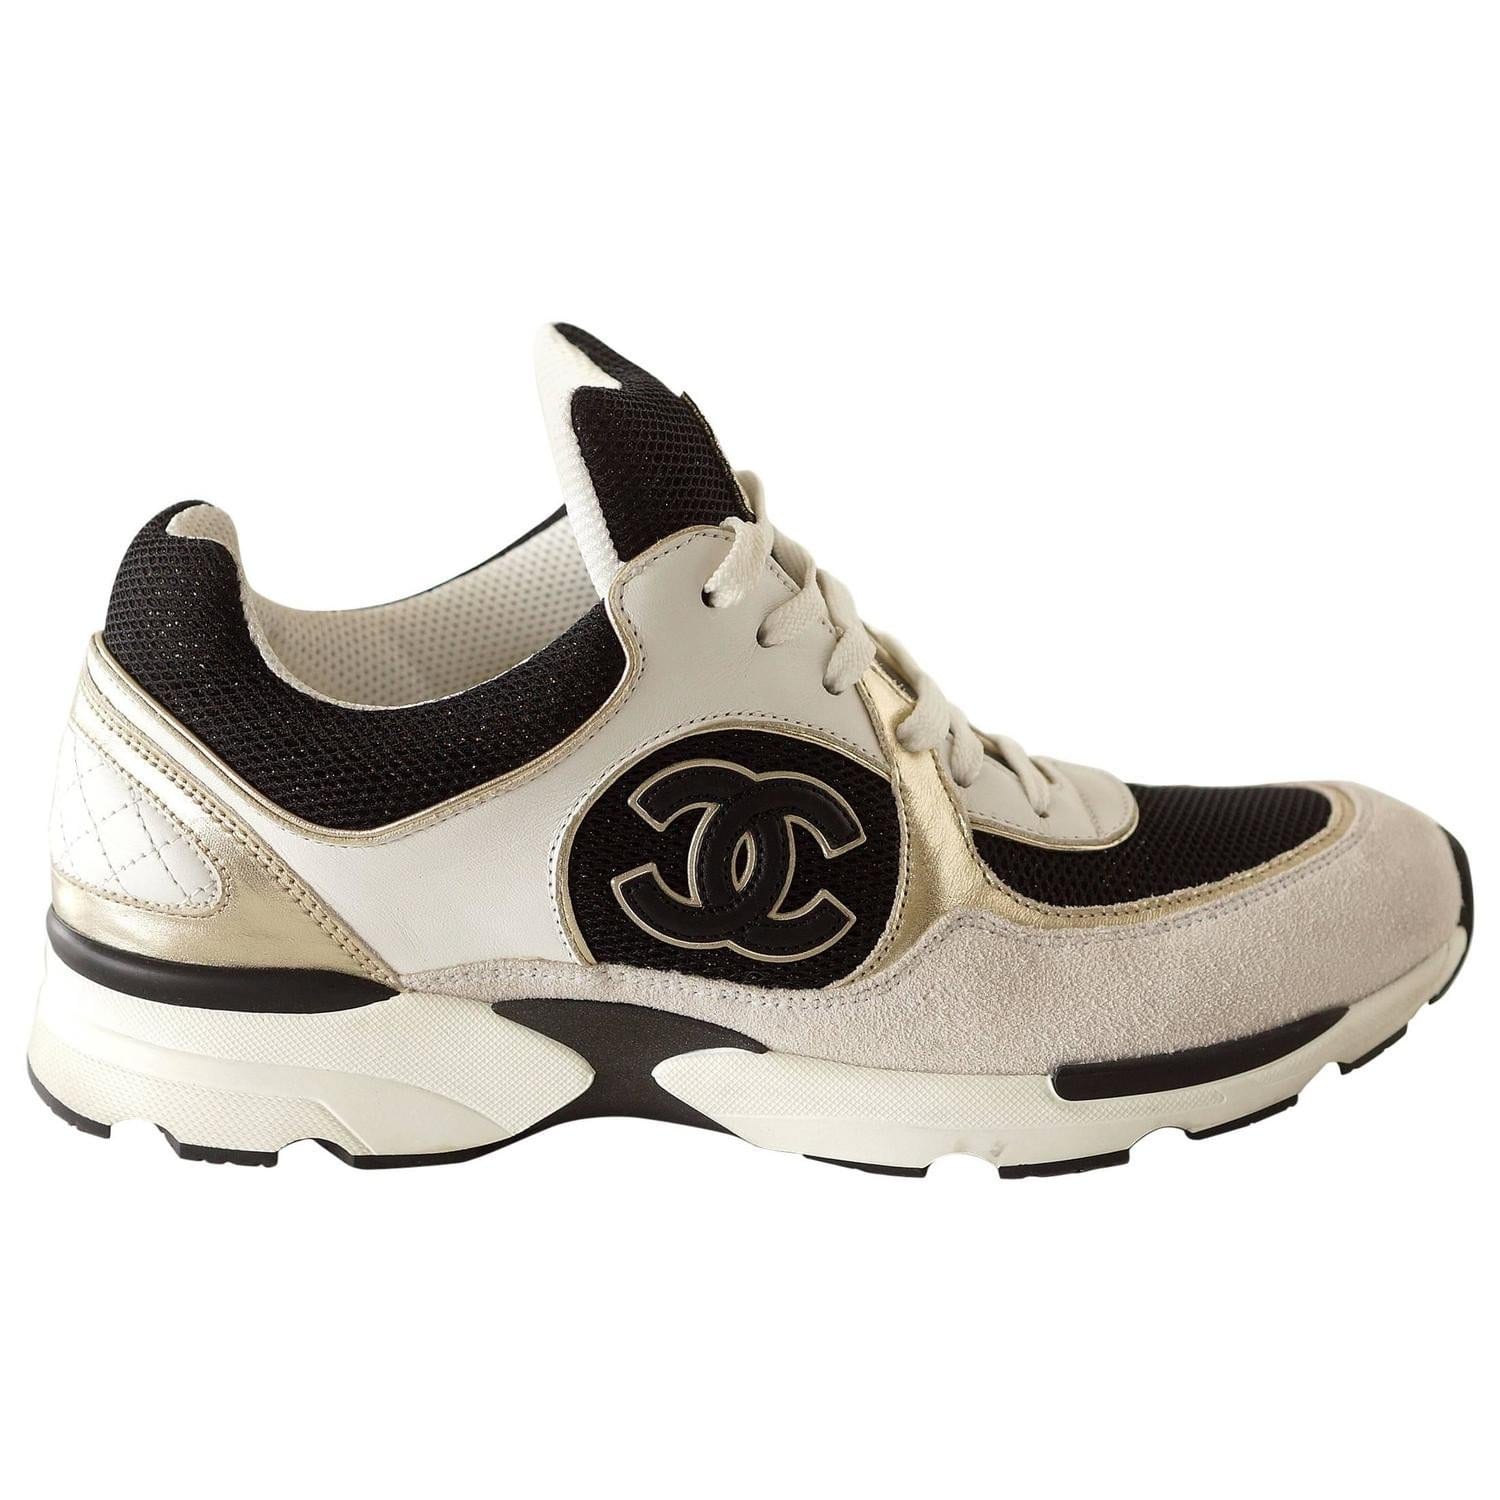 Chanel Shoe Sneaker Tennis White Leather Metallic Textile 39.5 / –